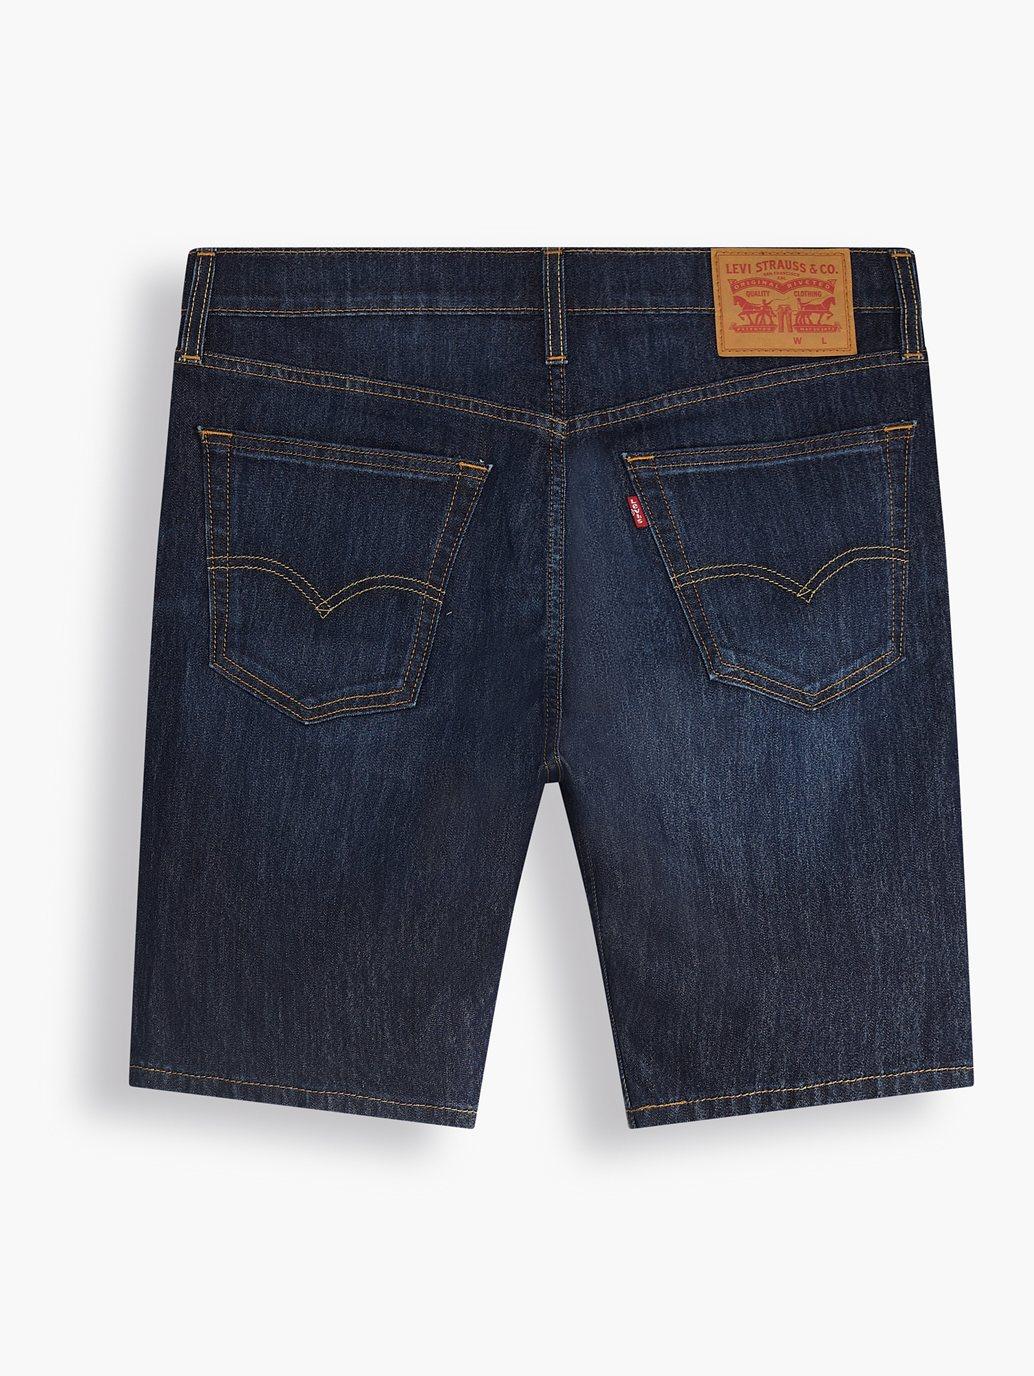 levis singapore mens standard jean shorts 398640066 22 Details